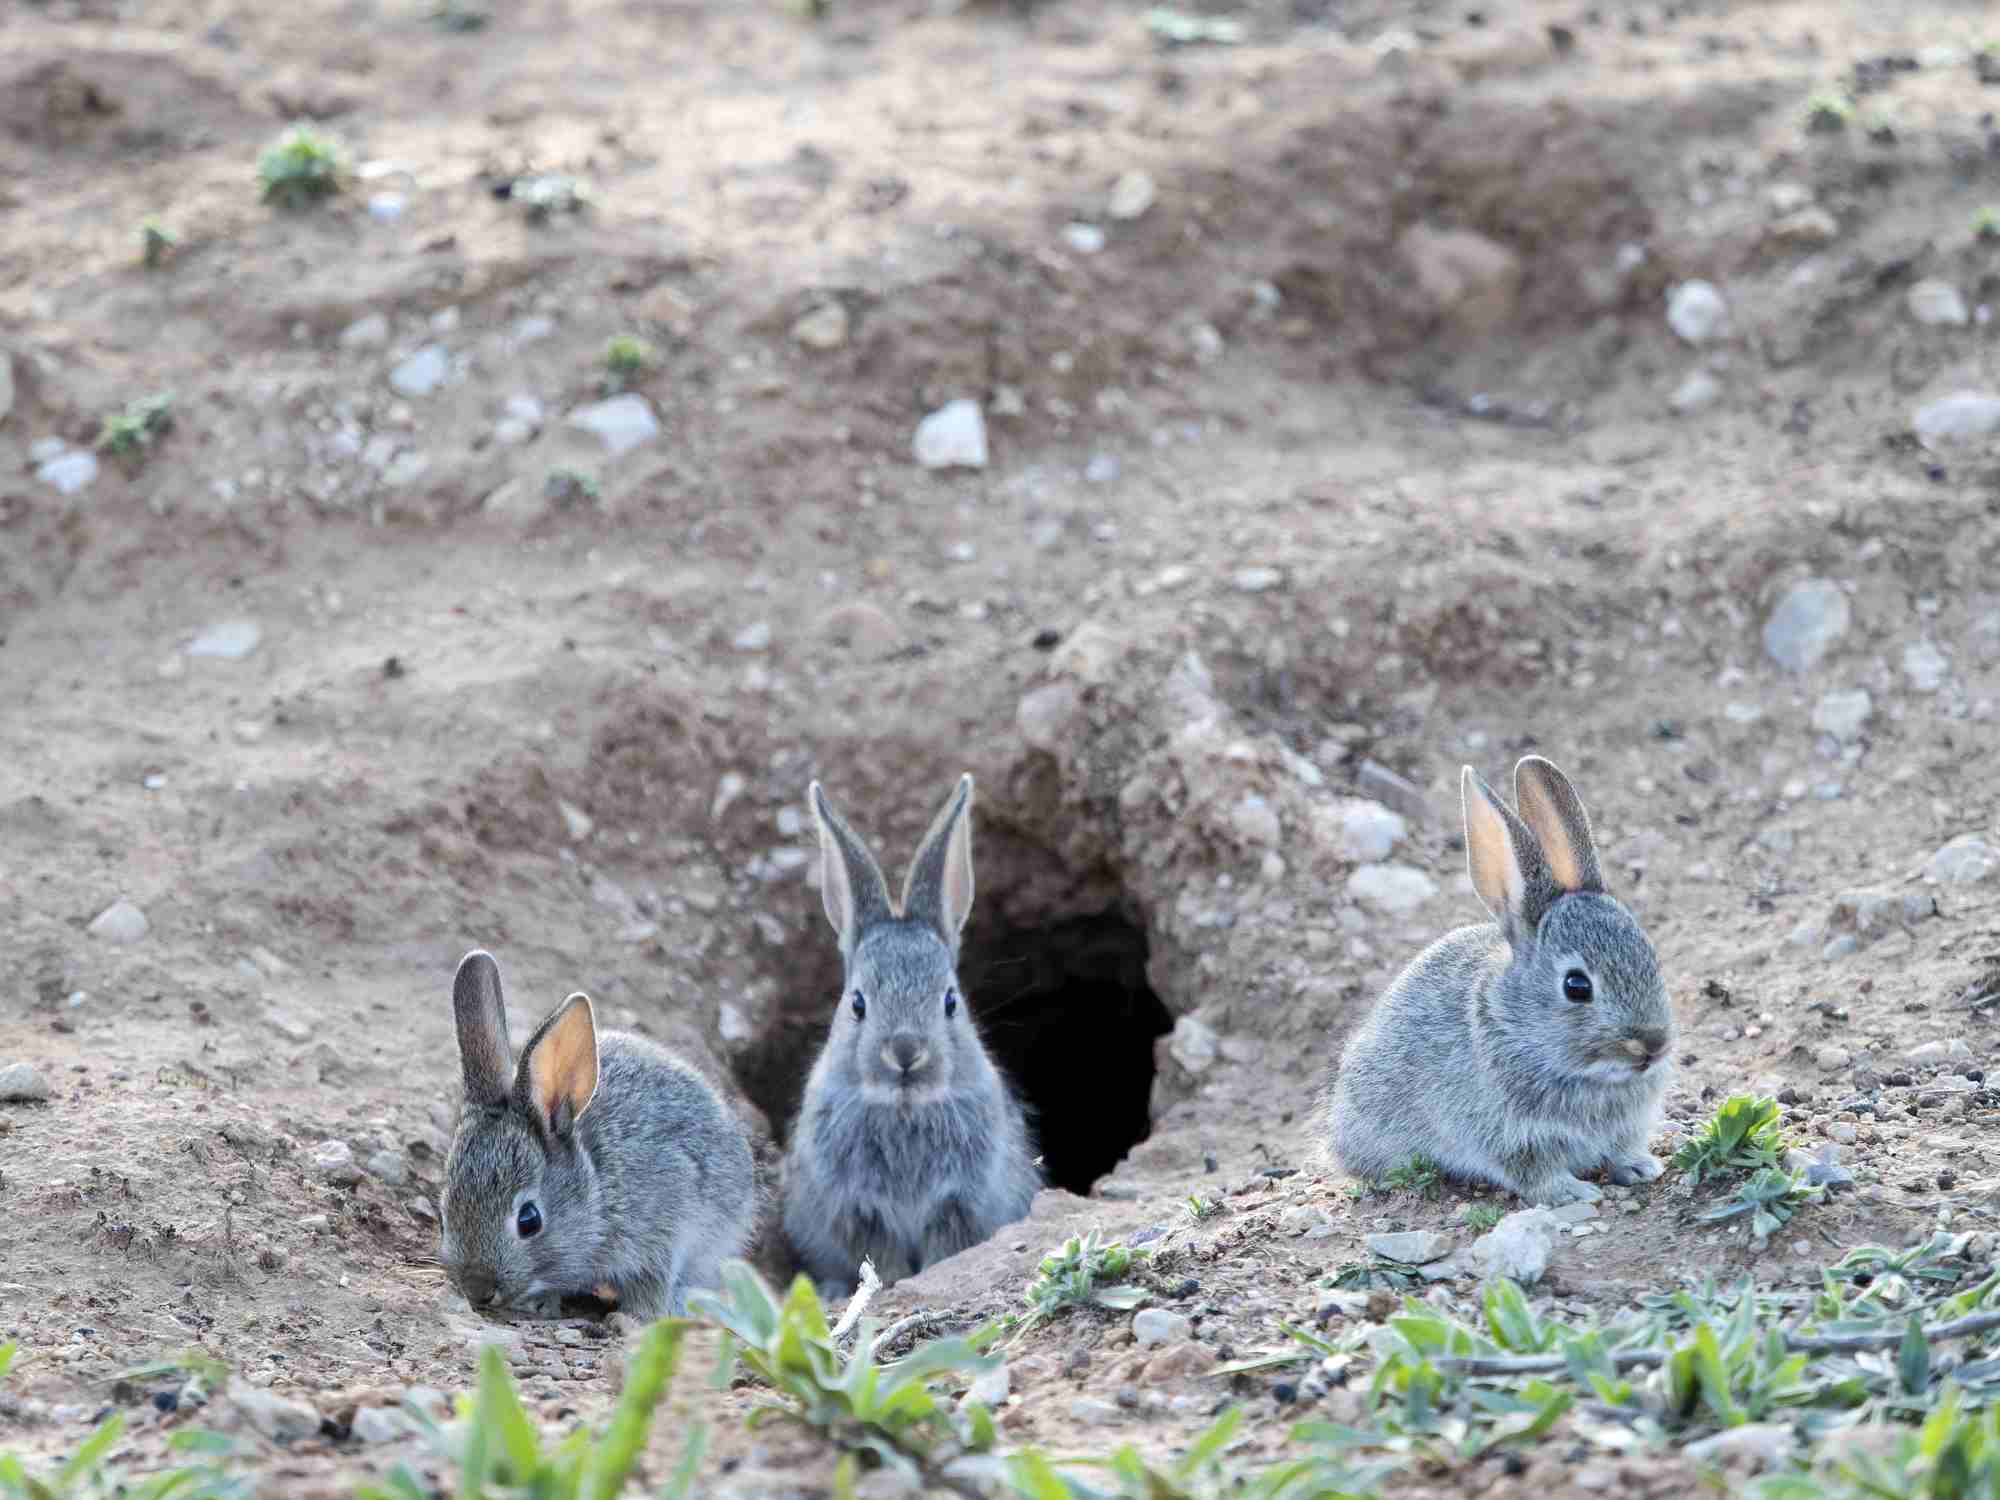 Rabbits digging